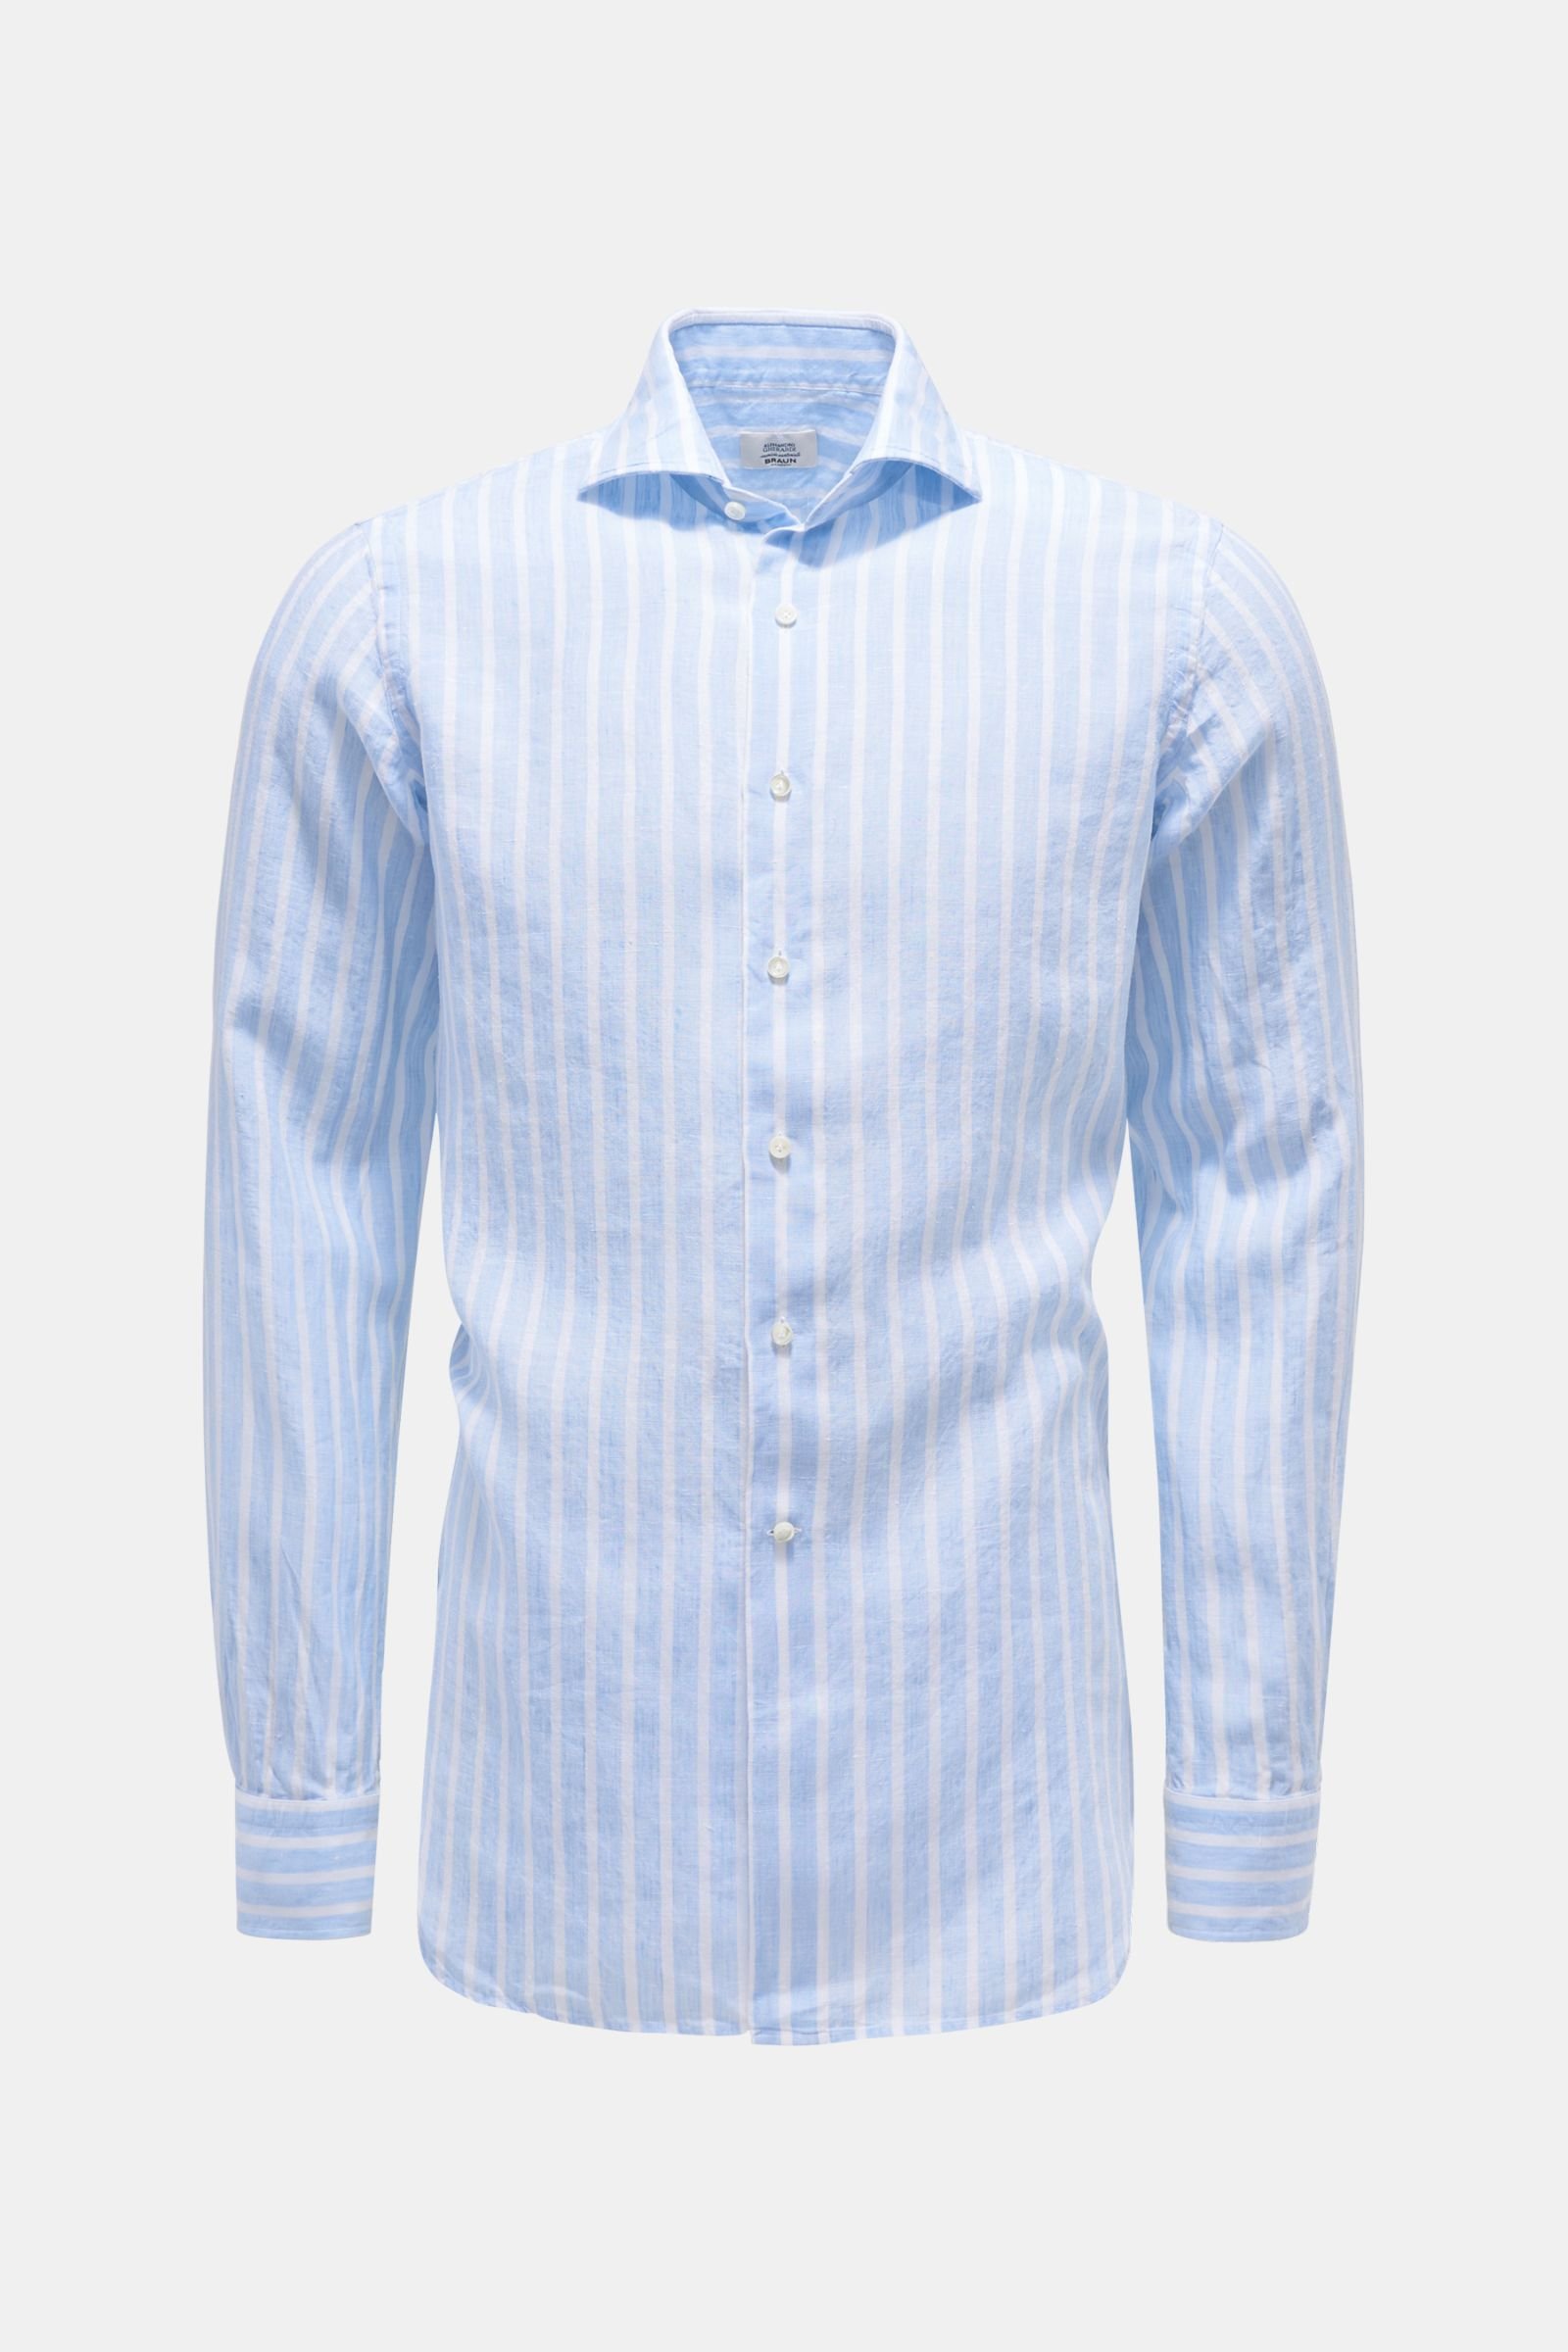 Linen shirt shark collar light blue/white striped